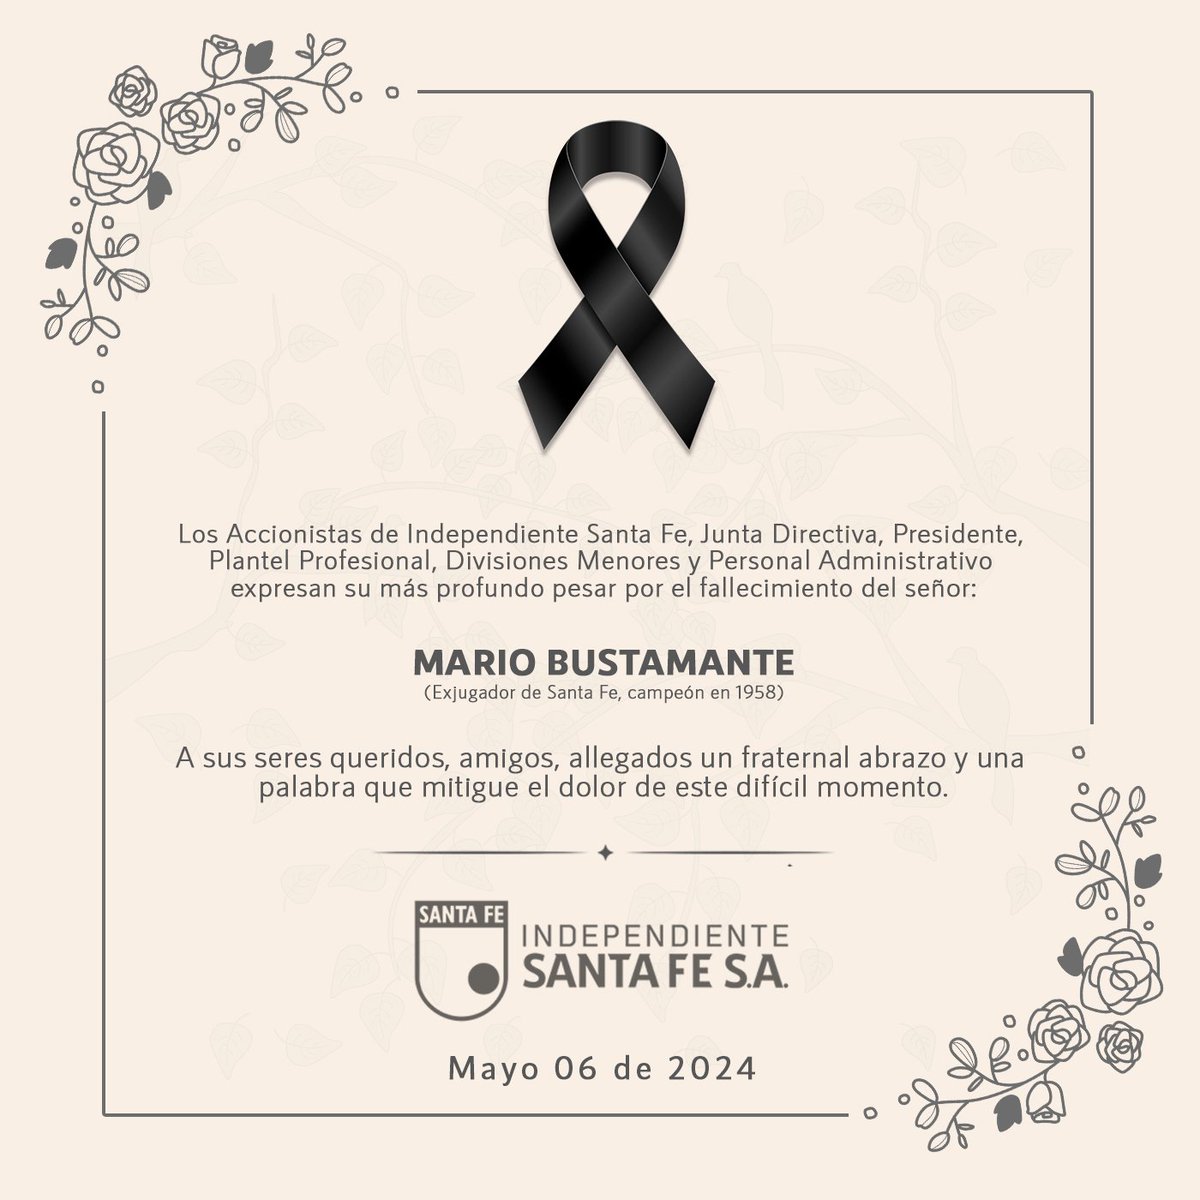 Independiente Santa Fe lamenta profundamente el fallecimiento del señor Mario Bustamante. Enviamos un fraternal saludo a toda su familia y allegados en este difícil momento.